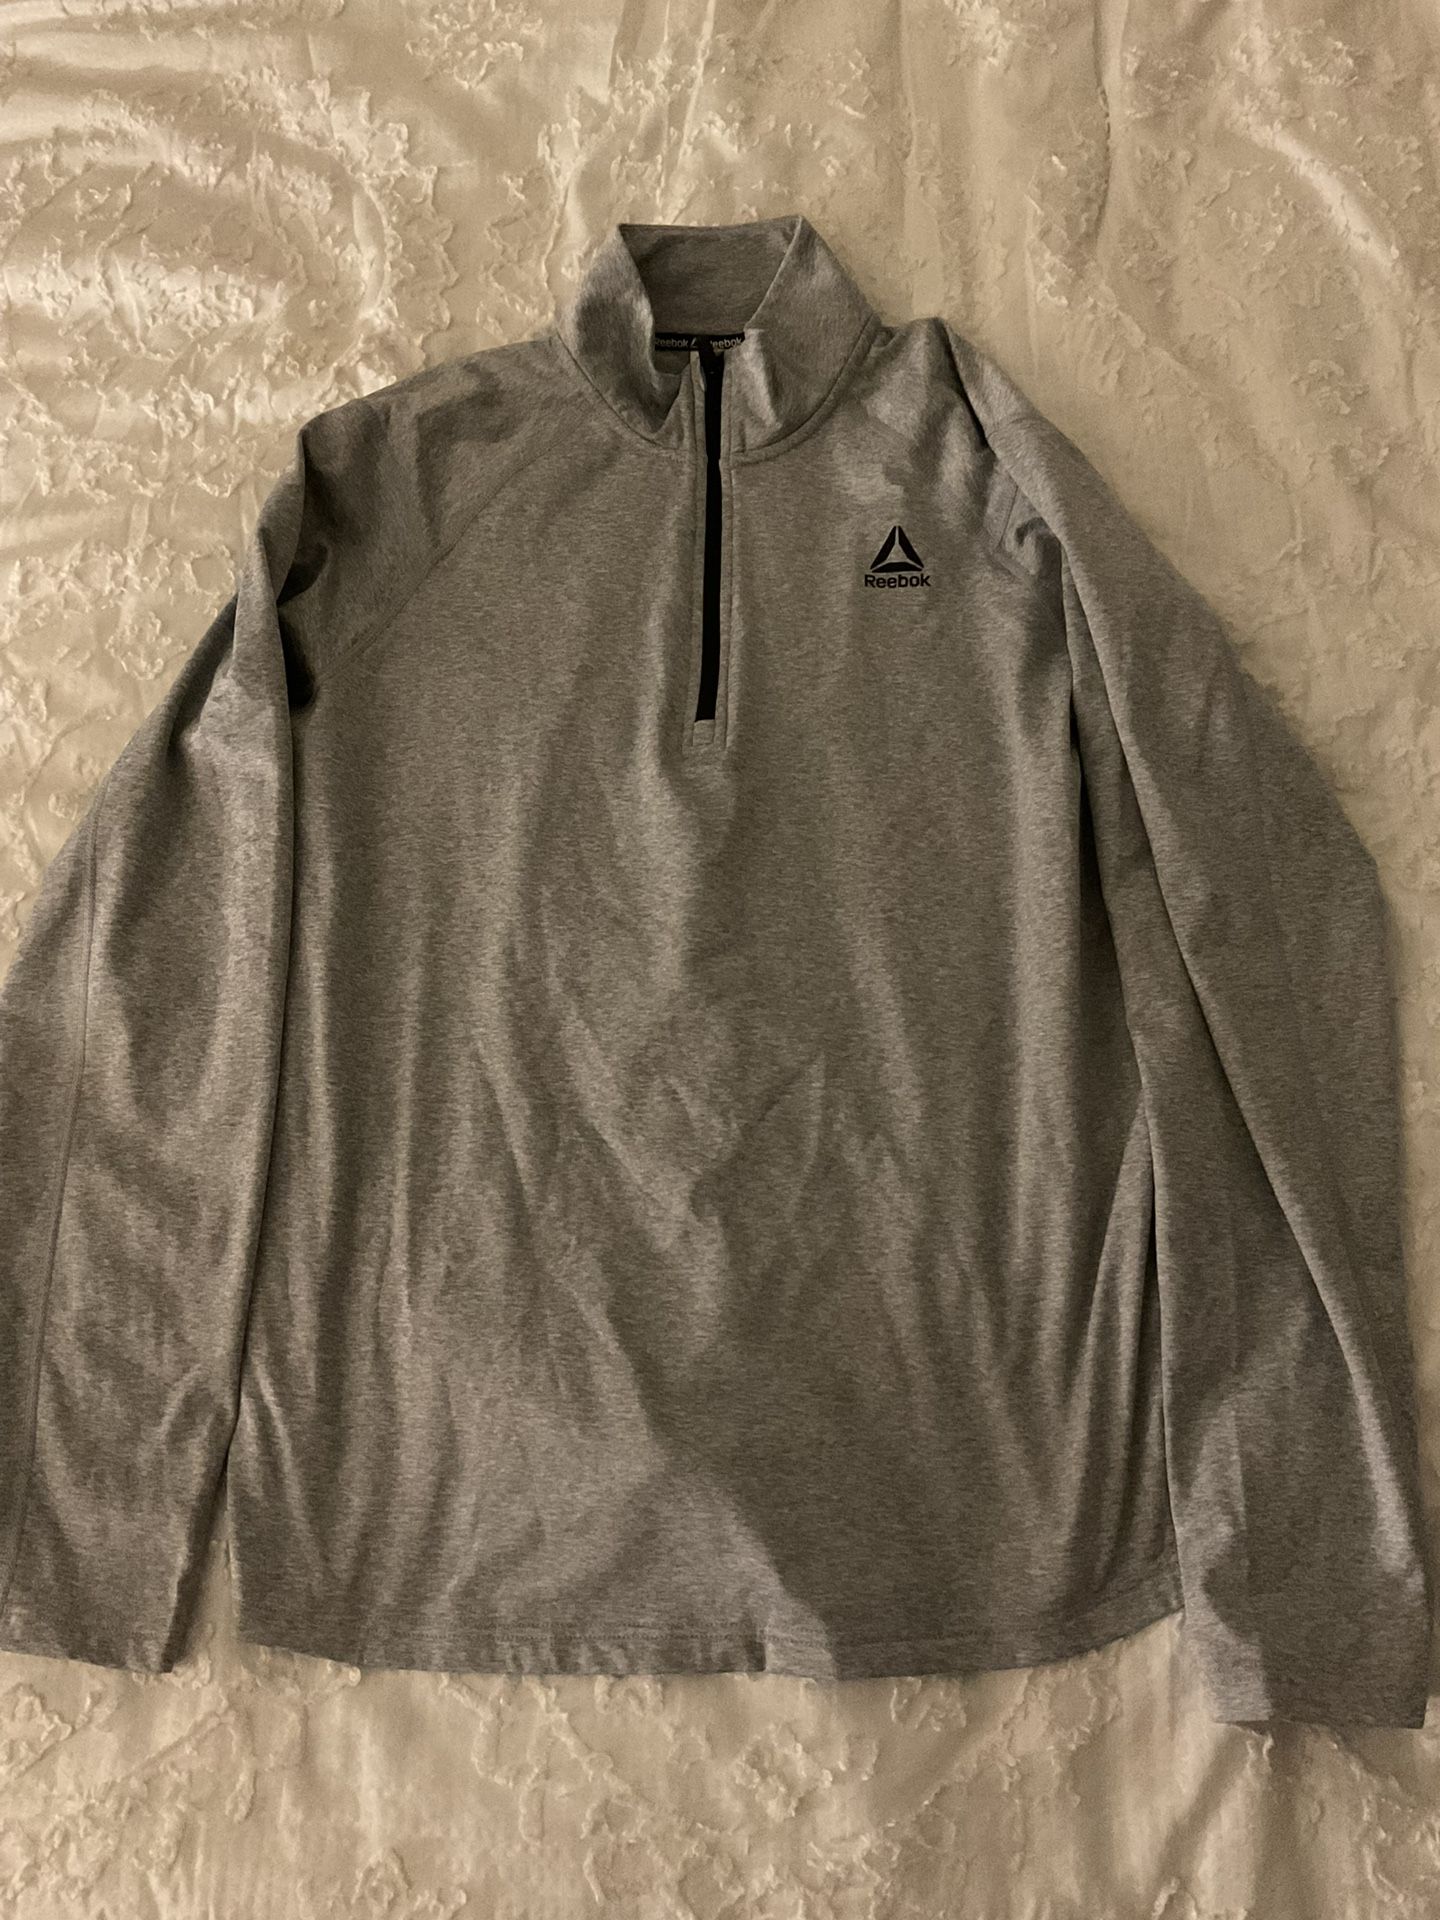 Reebok Men’s Gray Sweatshirt Size L